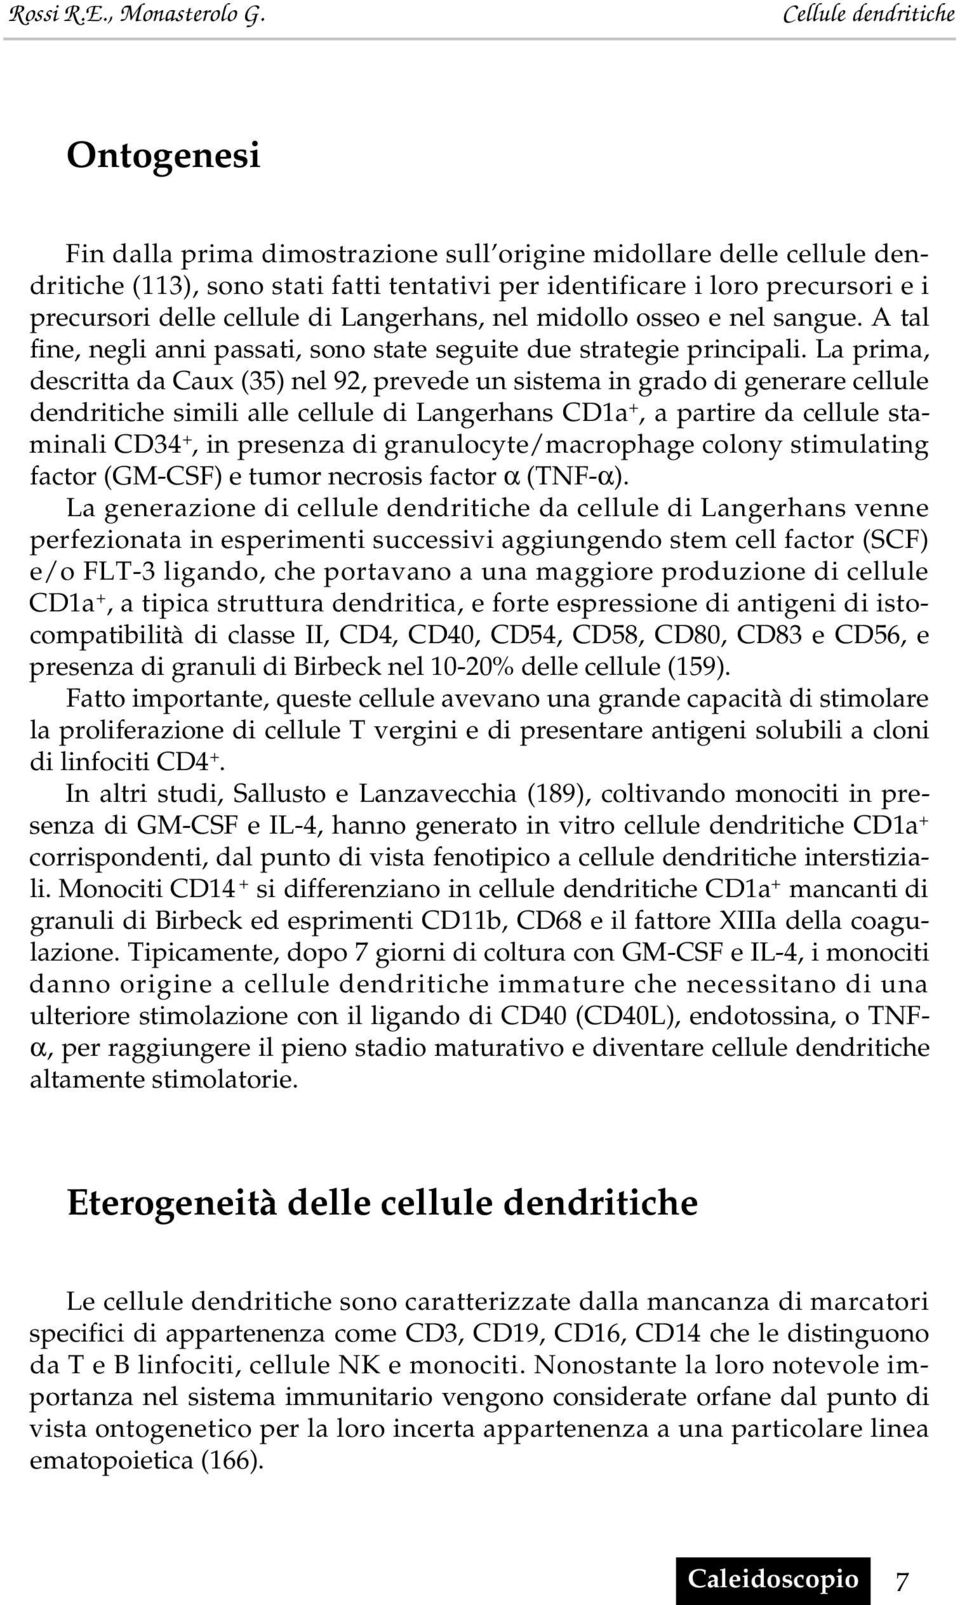 La prima, descritta da Caux (35) nel 92, prevede un sistema in grado di generare cellule dendritiche simili alle cellule di Langerhans CD1a +, a partire da cellule staminali CD34 +, in presenza di